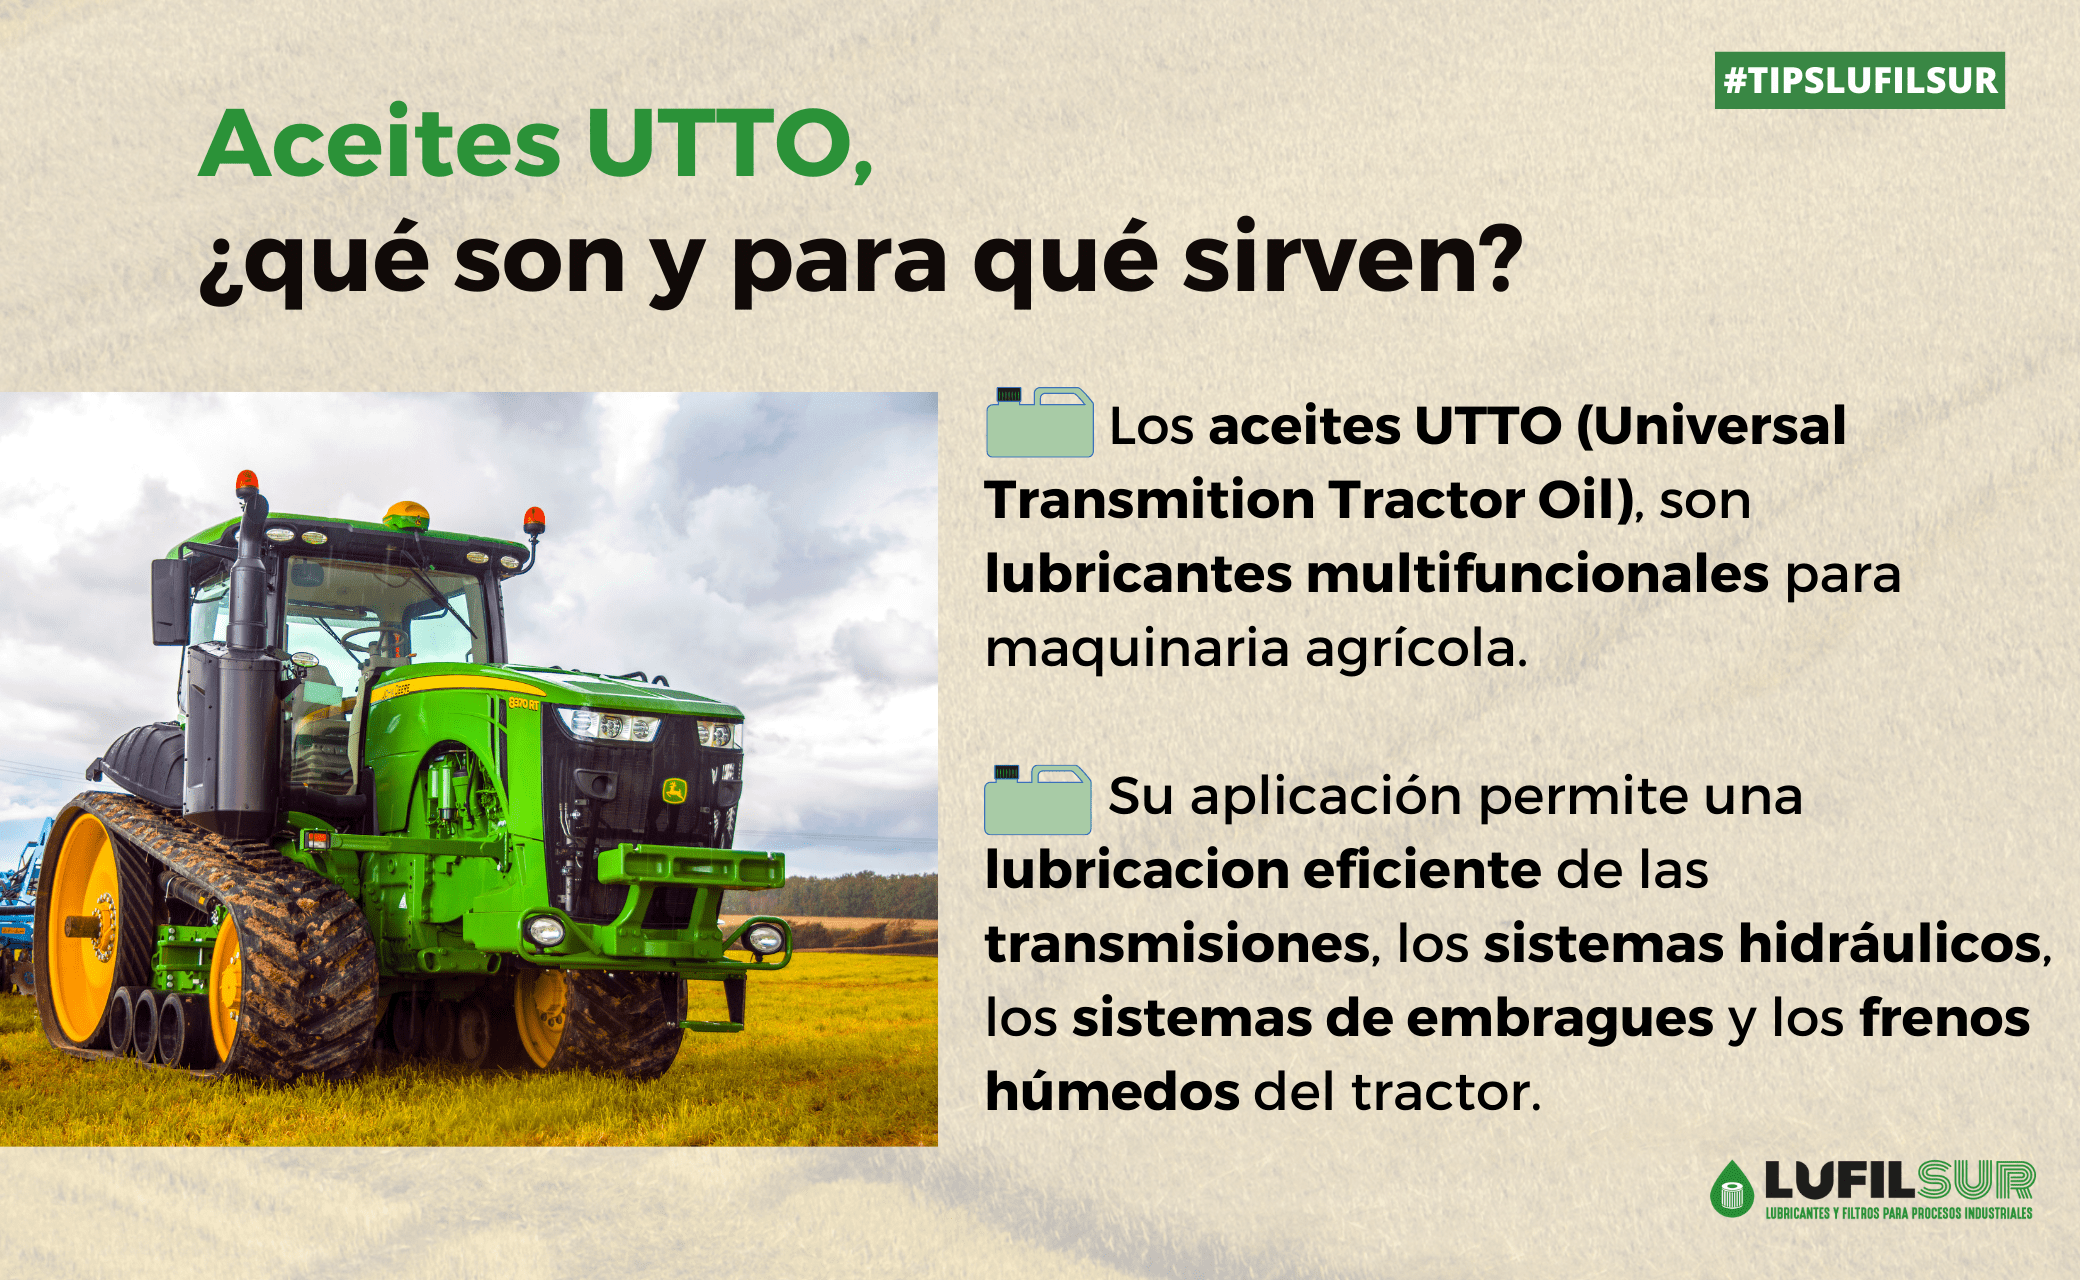 Los aceites UTTO son aceites universales para lubricacion detransmisiones de la maquinaria agricola